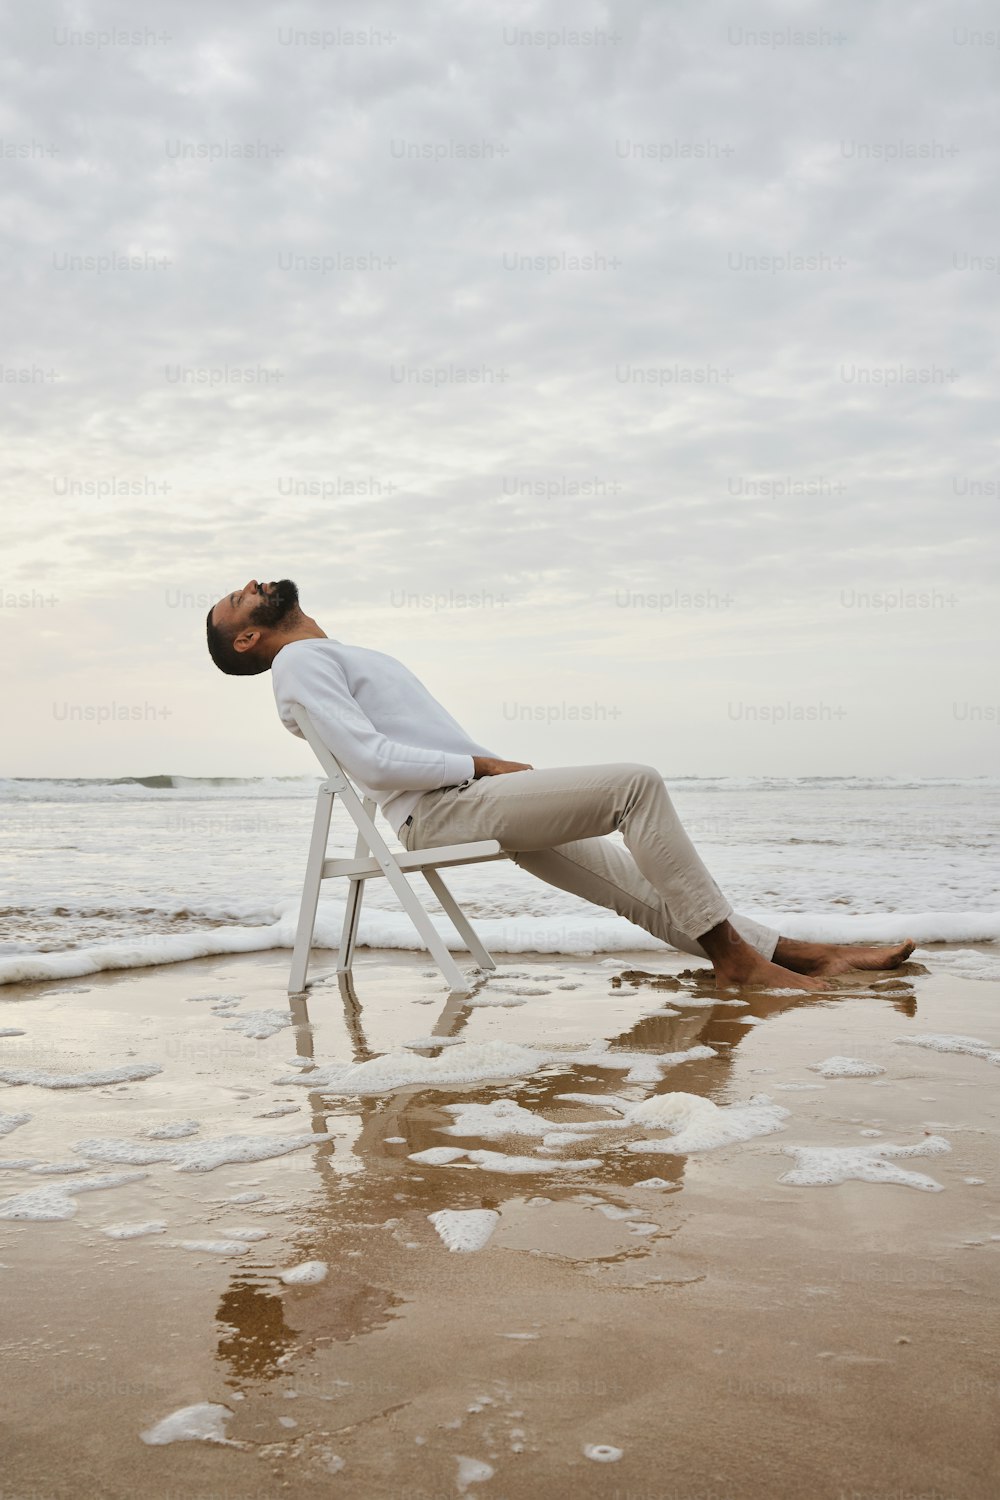 해변의 의자에 앉아 있는 남자